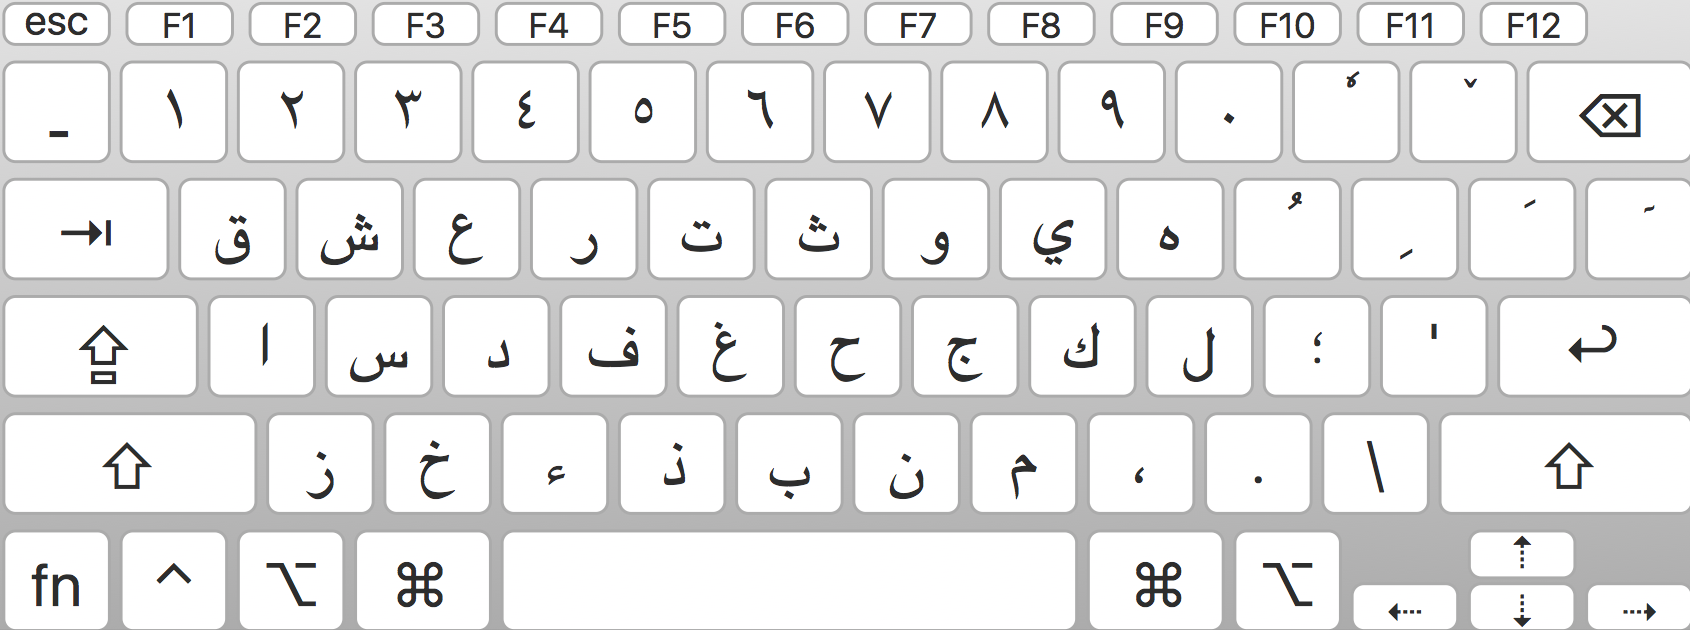 Persian Keyboard Download For Mac